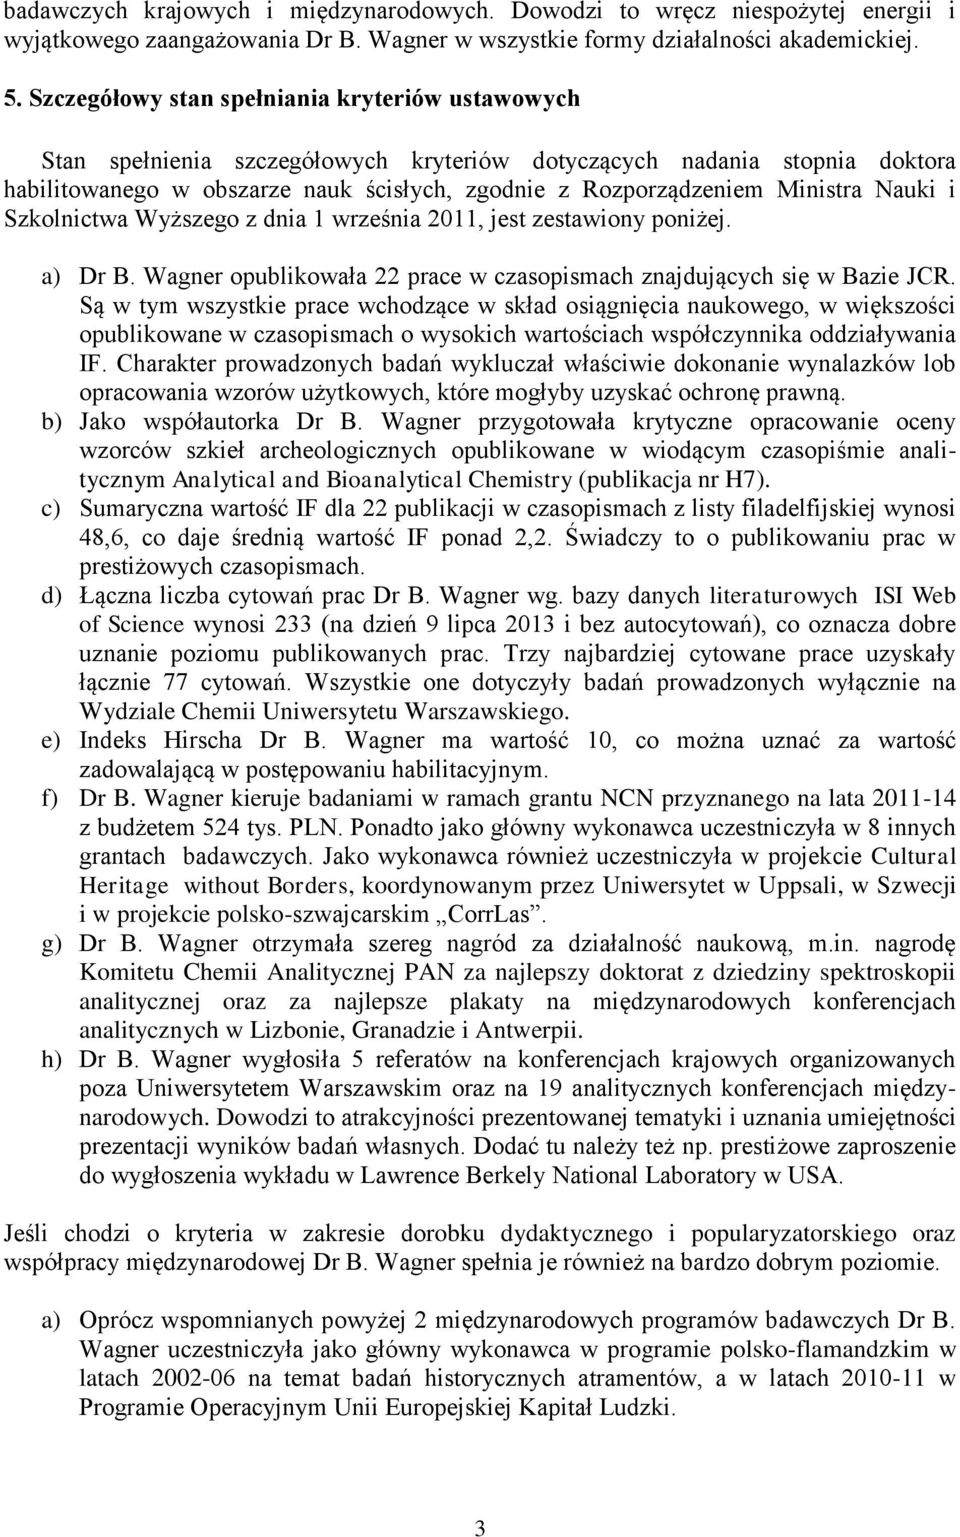 Ministra Nauki i Szkolnictwa Wyższego z dnia 1 września 2011, jest zestawiony poniżej. a) Dr B. Wagner opublikowała 22 prace w czasopismach znajdujących się w Bazie JCR.